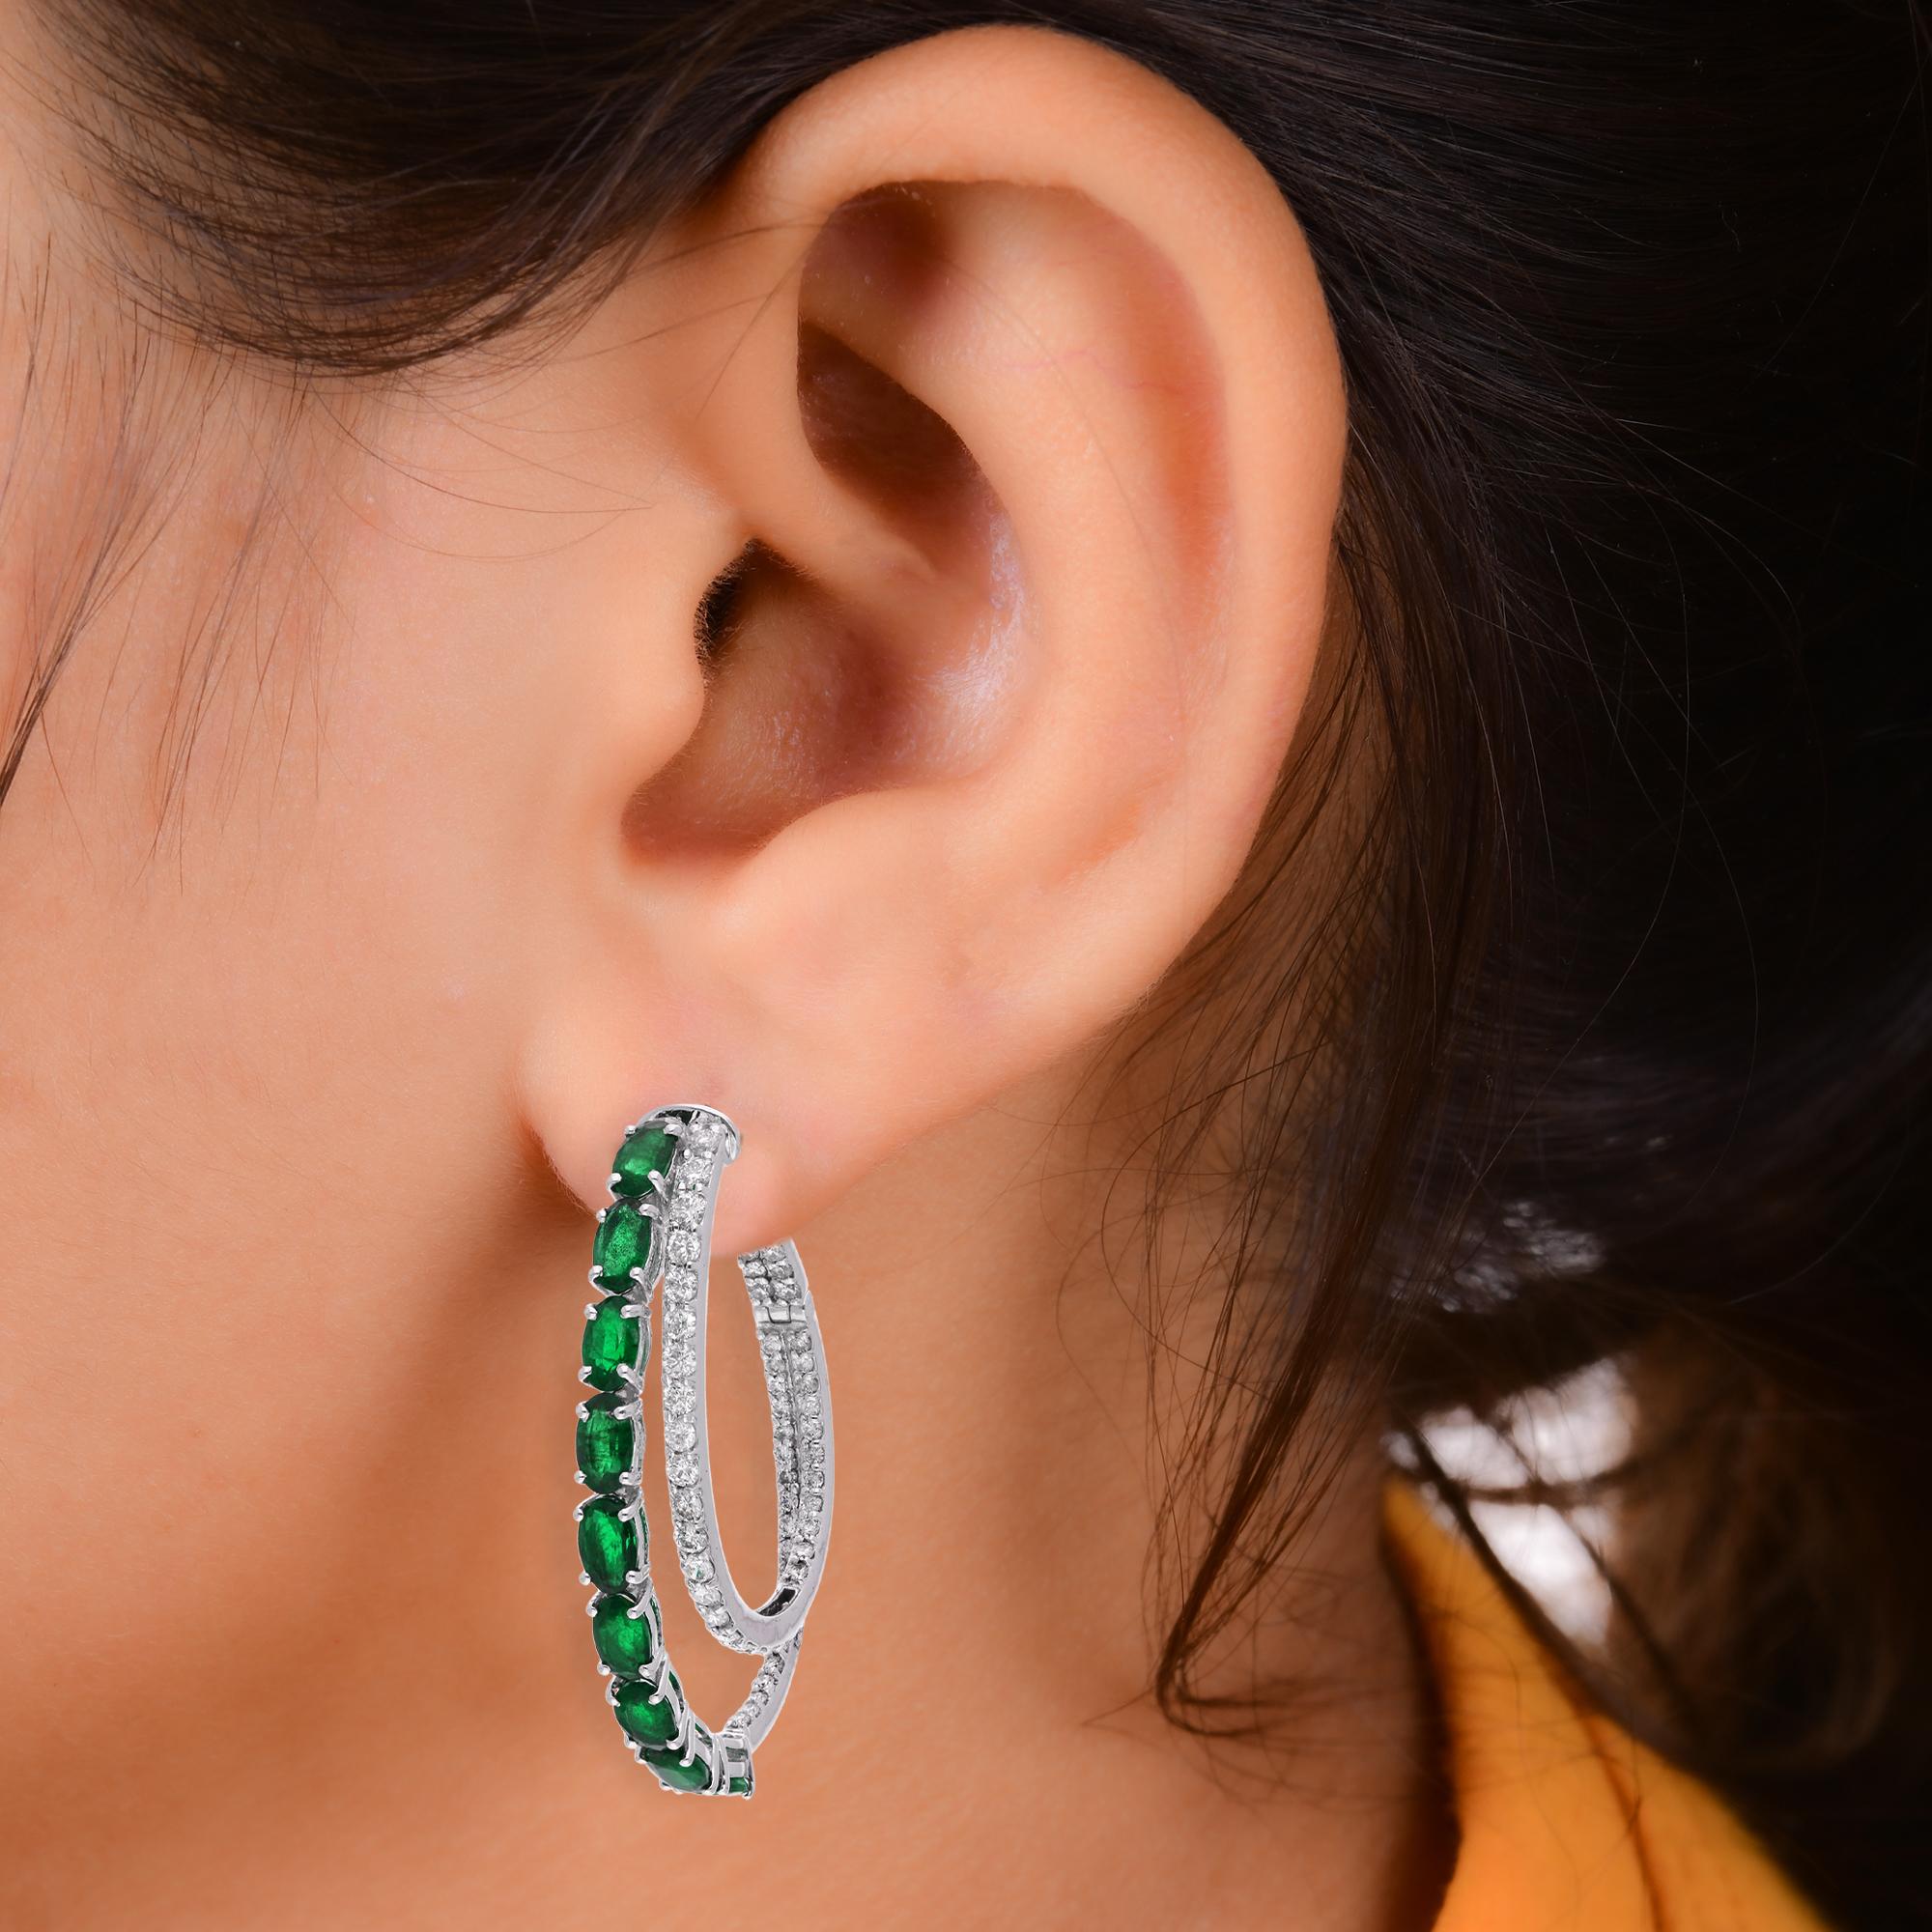 Oval Cut Oval Shape Emerald Gemstone Hoop Earrings Diamond 18 Karat White Gold Jewelry For Sale